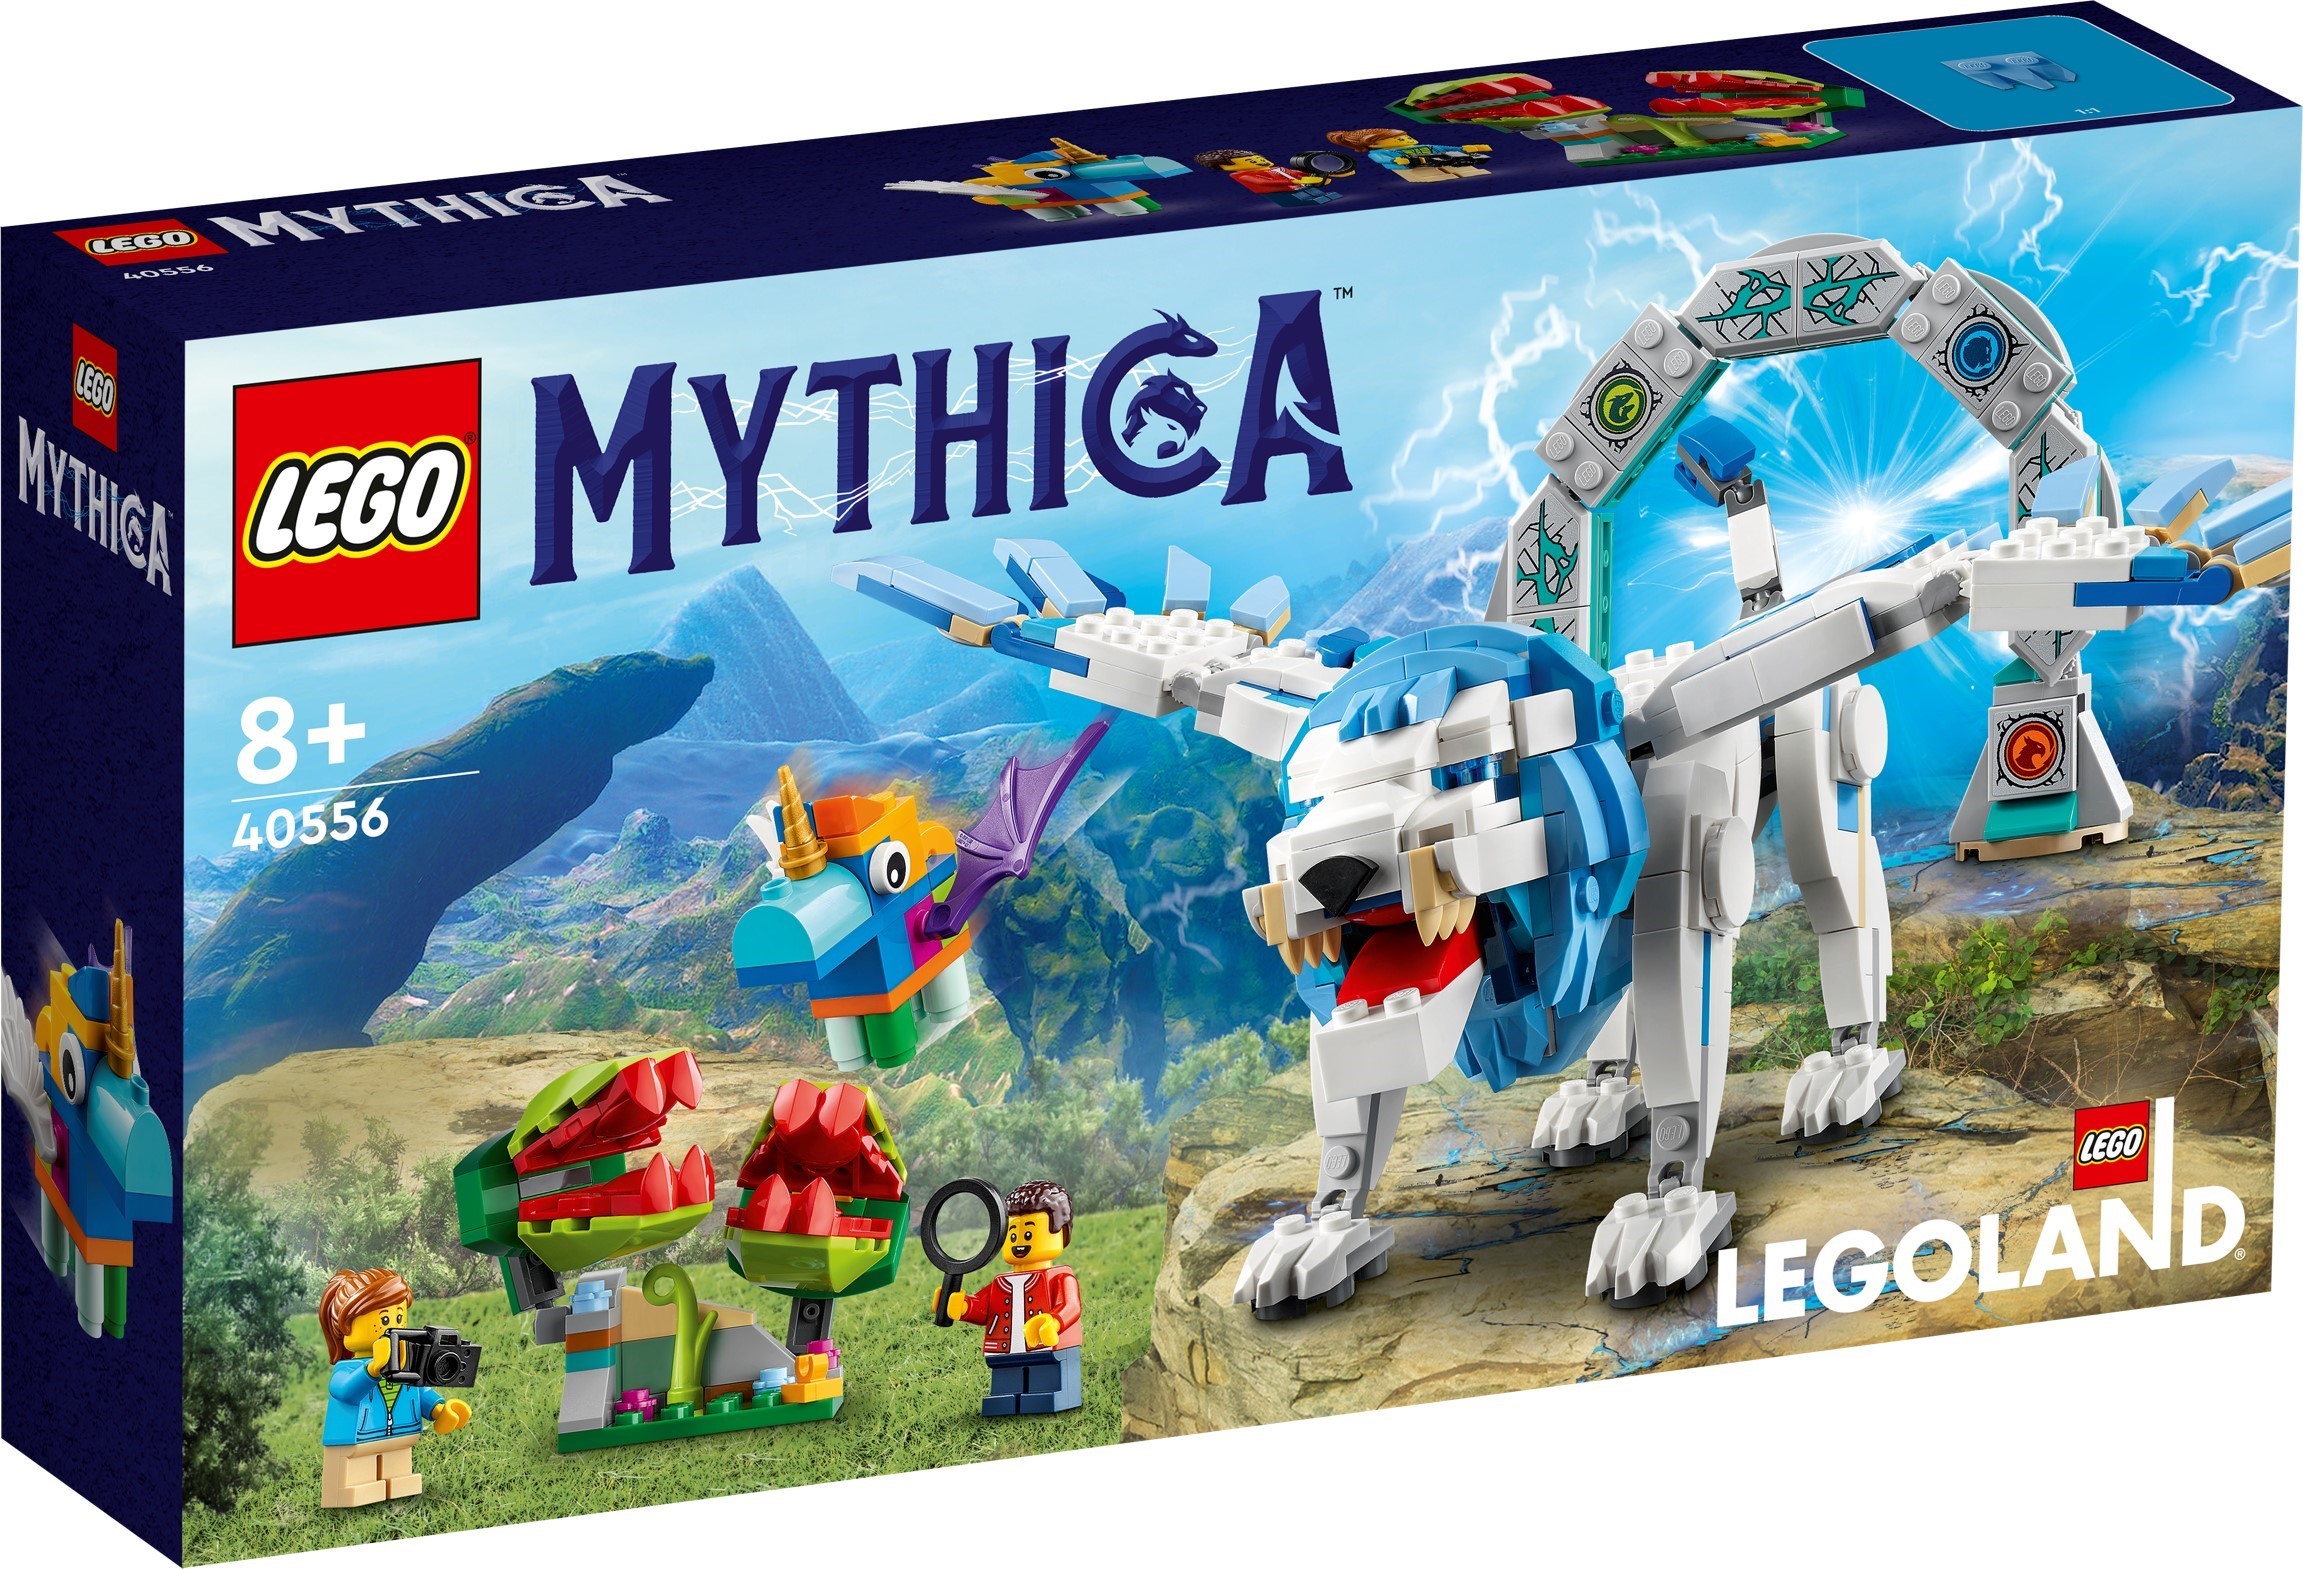 Конструктор LEGO Коллекционный набор из LEGOLAND Мифические существа 40556 (Mythica Set)